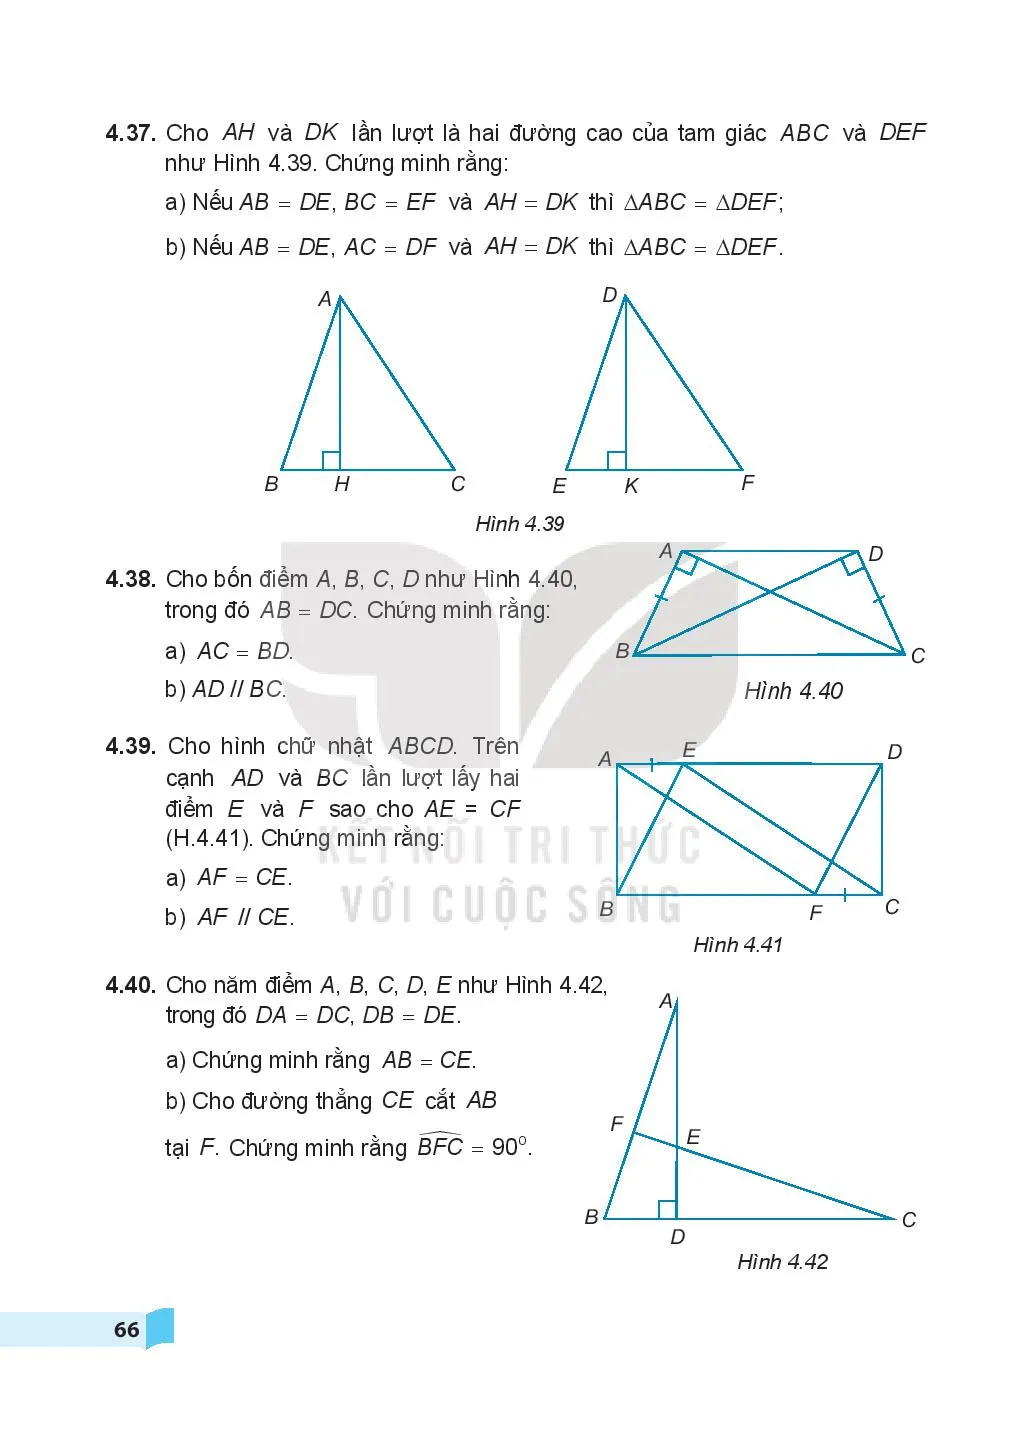 Bài 15. Các trường hợp bằng nhau của tam giác vuông